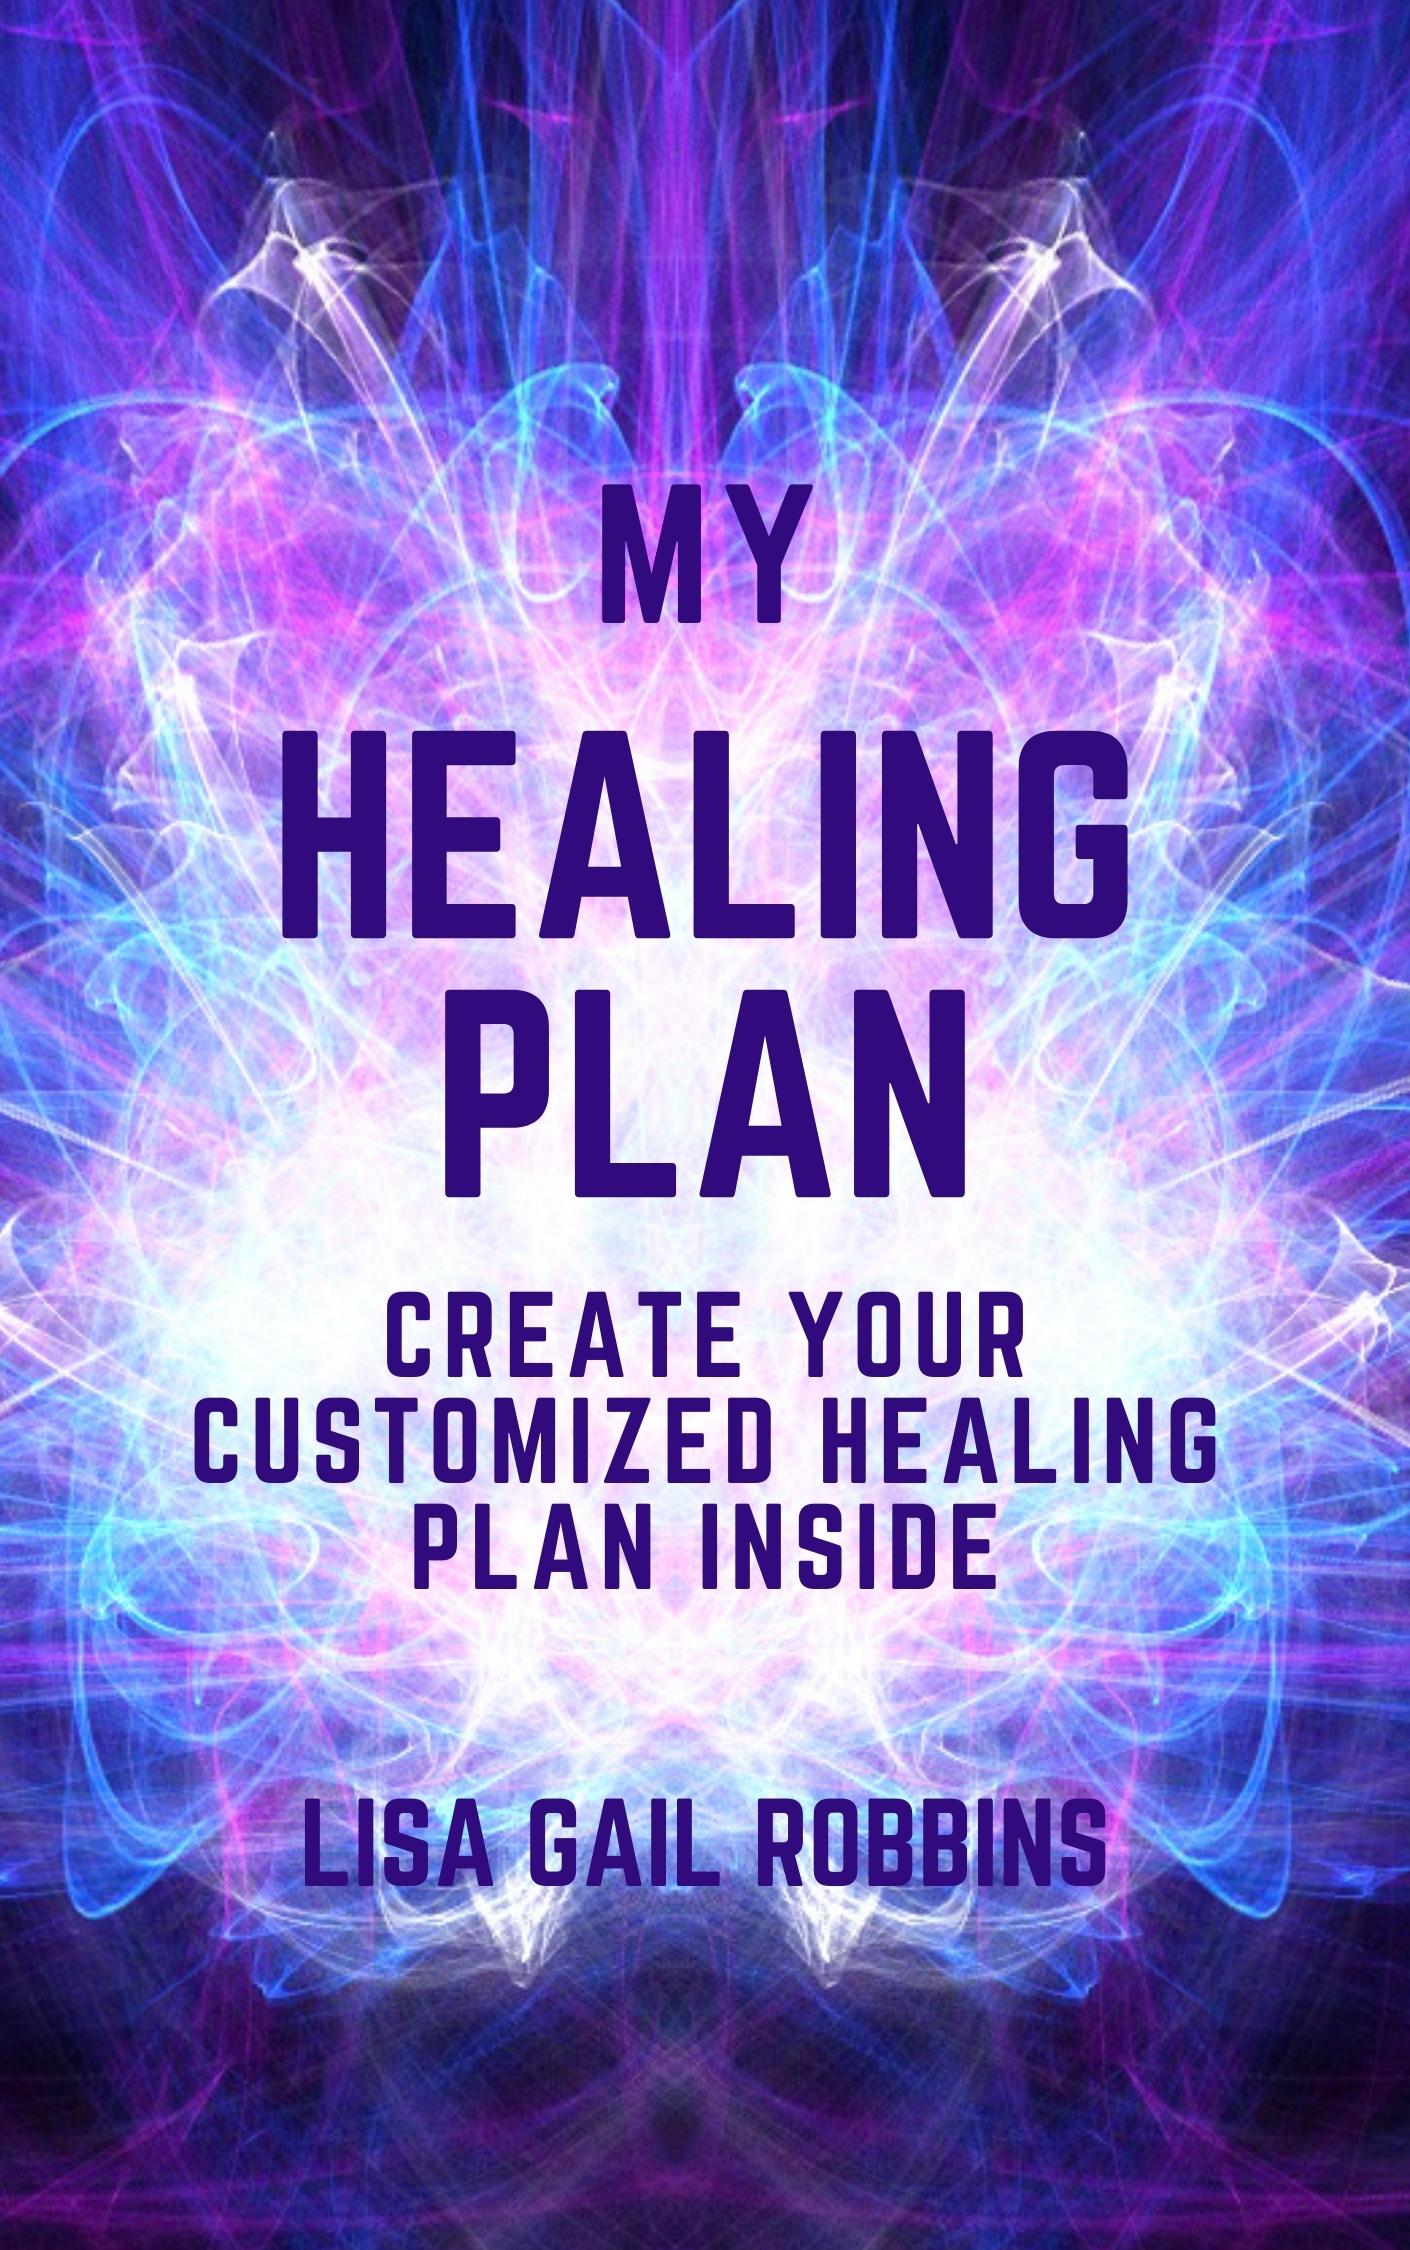 My Healing Plan Image